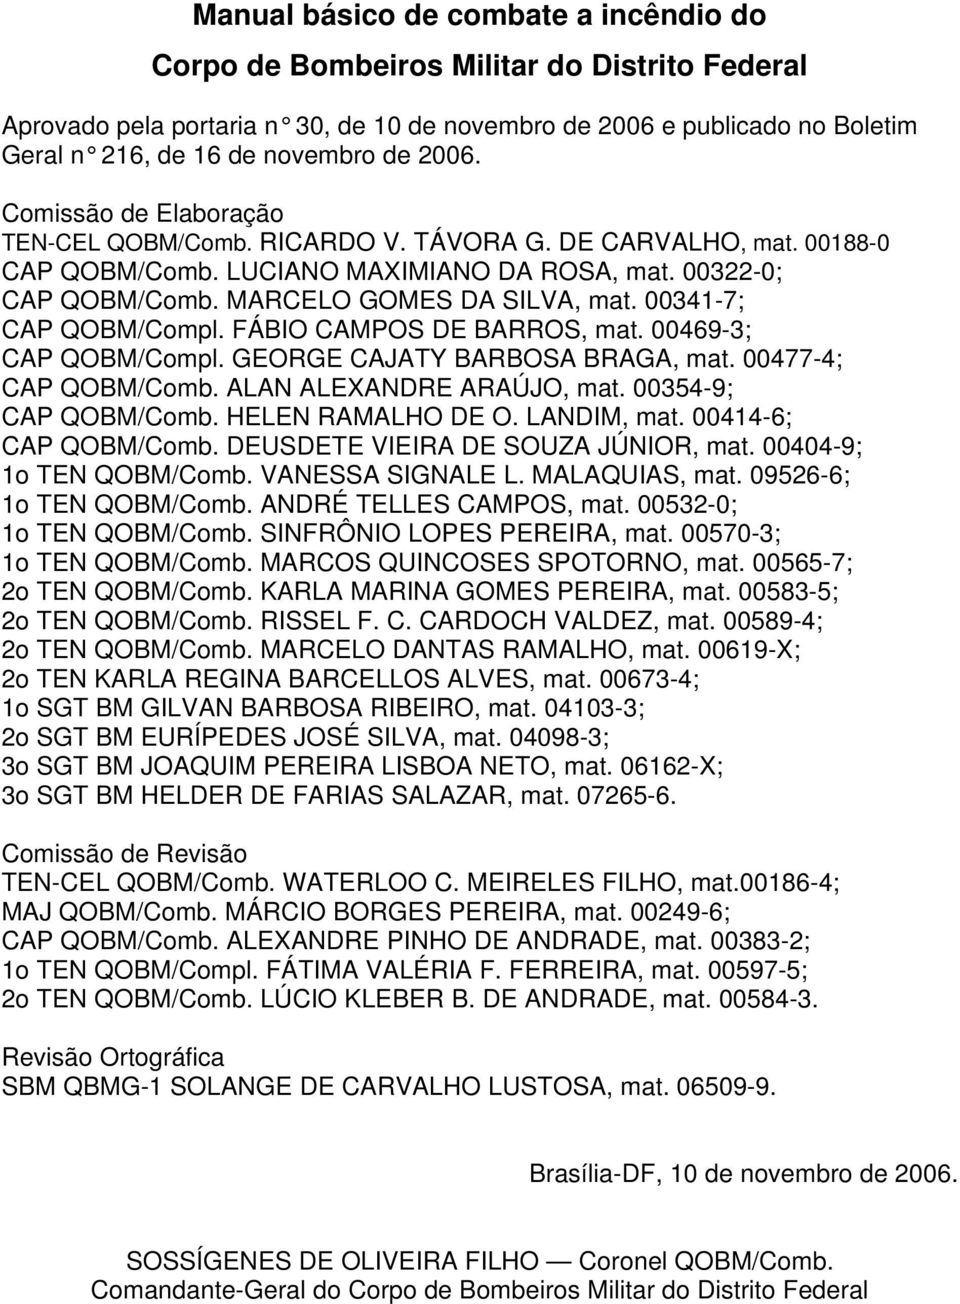 00341-7; CAP QOBM/Compl. FÁBIO CAMPOS DE BARROS, mat. 00469-3; CAP QOBM/Compl. GEORGE CAJATY BARBOSA BRAGA, mat. 00477-4; CAP QOBM/Comb. ALAN ALEXANDRE ARAÚJO, mat. 00354-9; CAP QOBM/Comb.